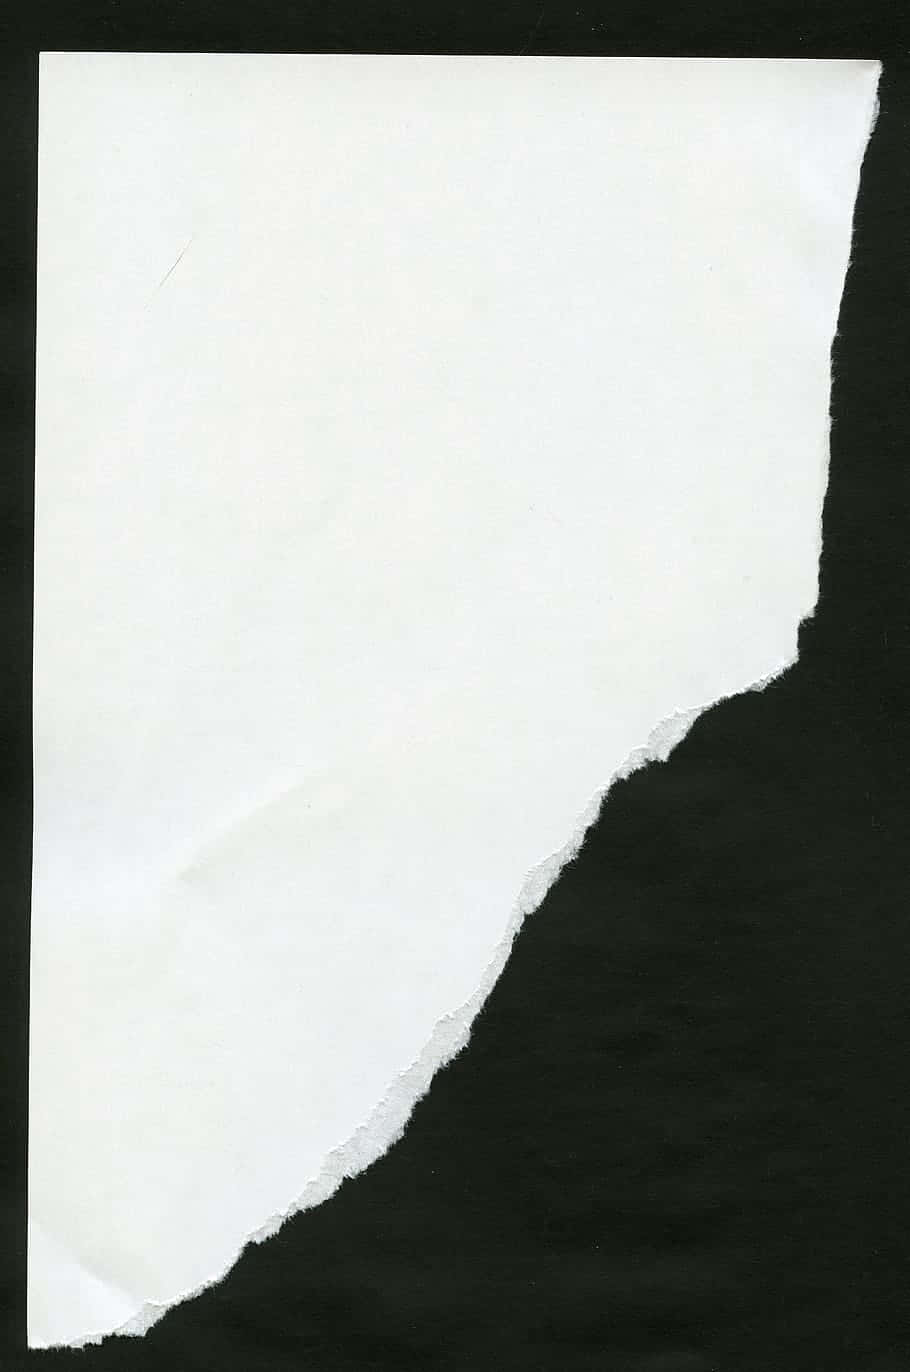 Leeresweißes Zerrissenes Papier Schwarzer Hintergrund Wallpaper